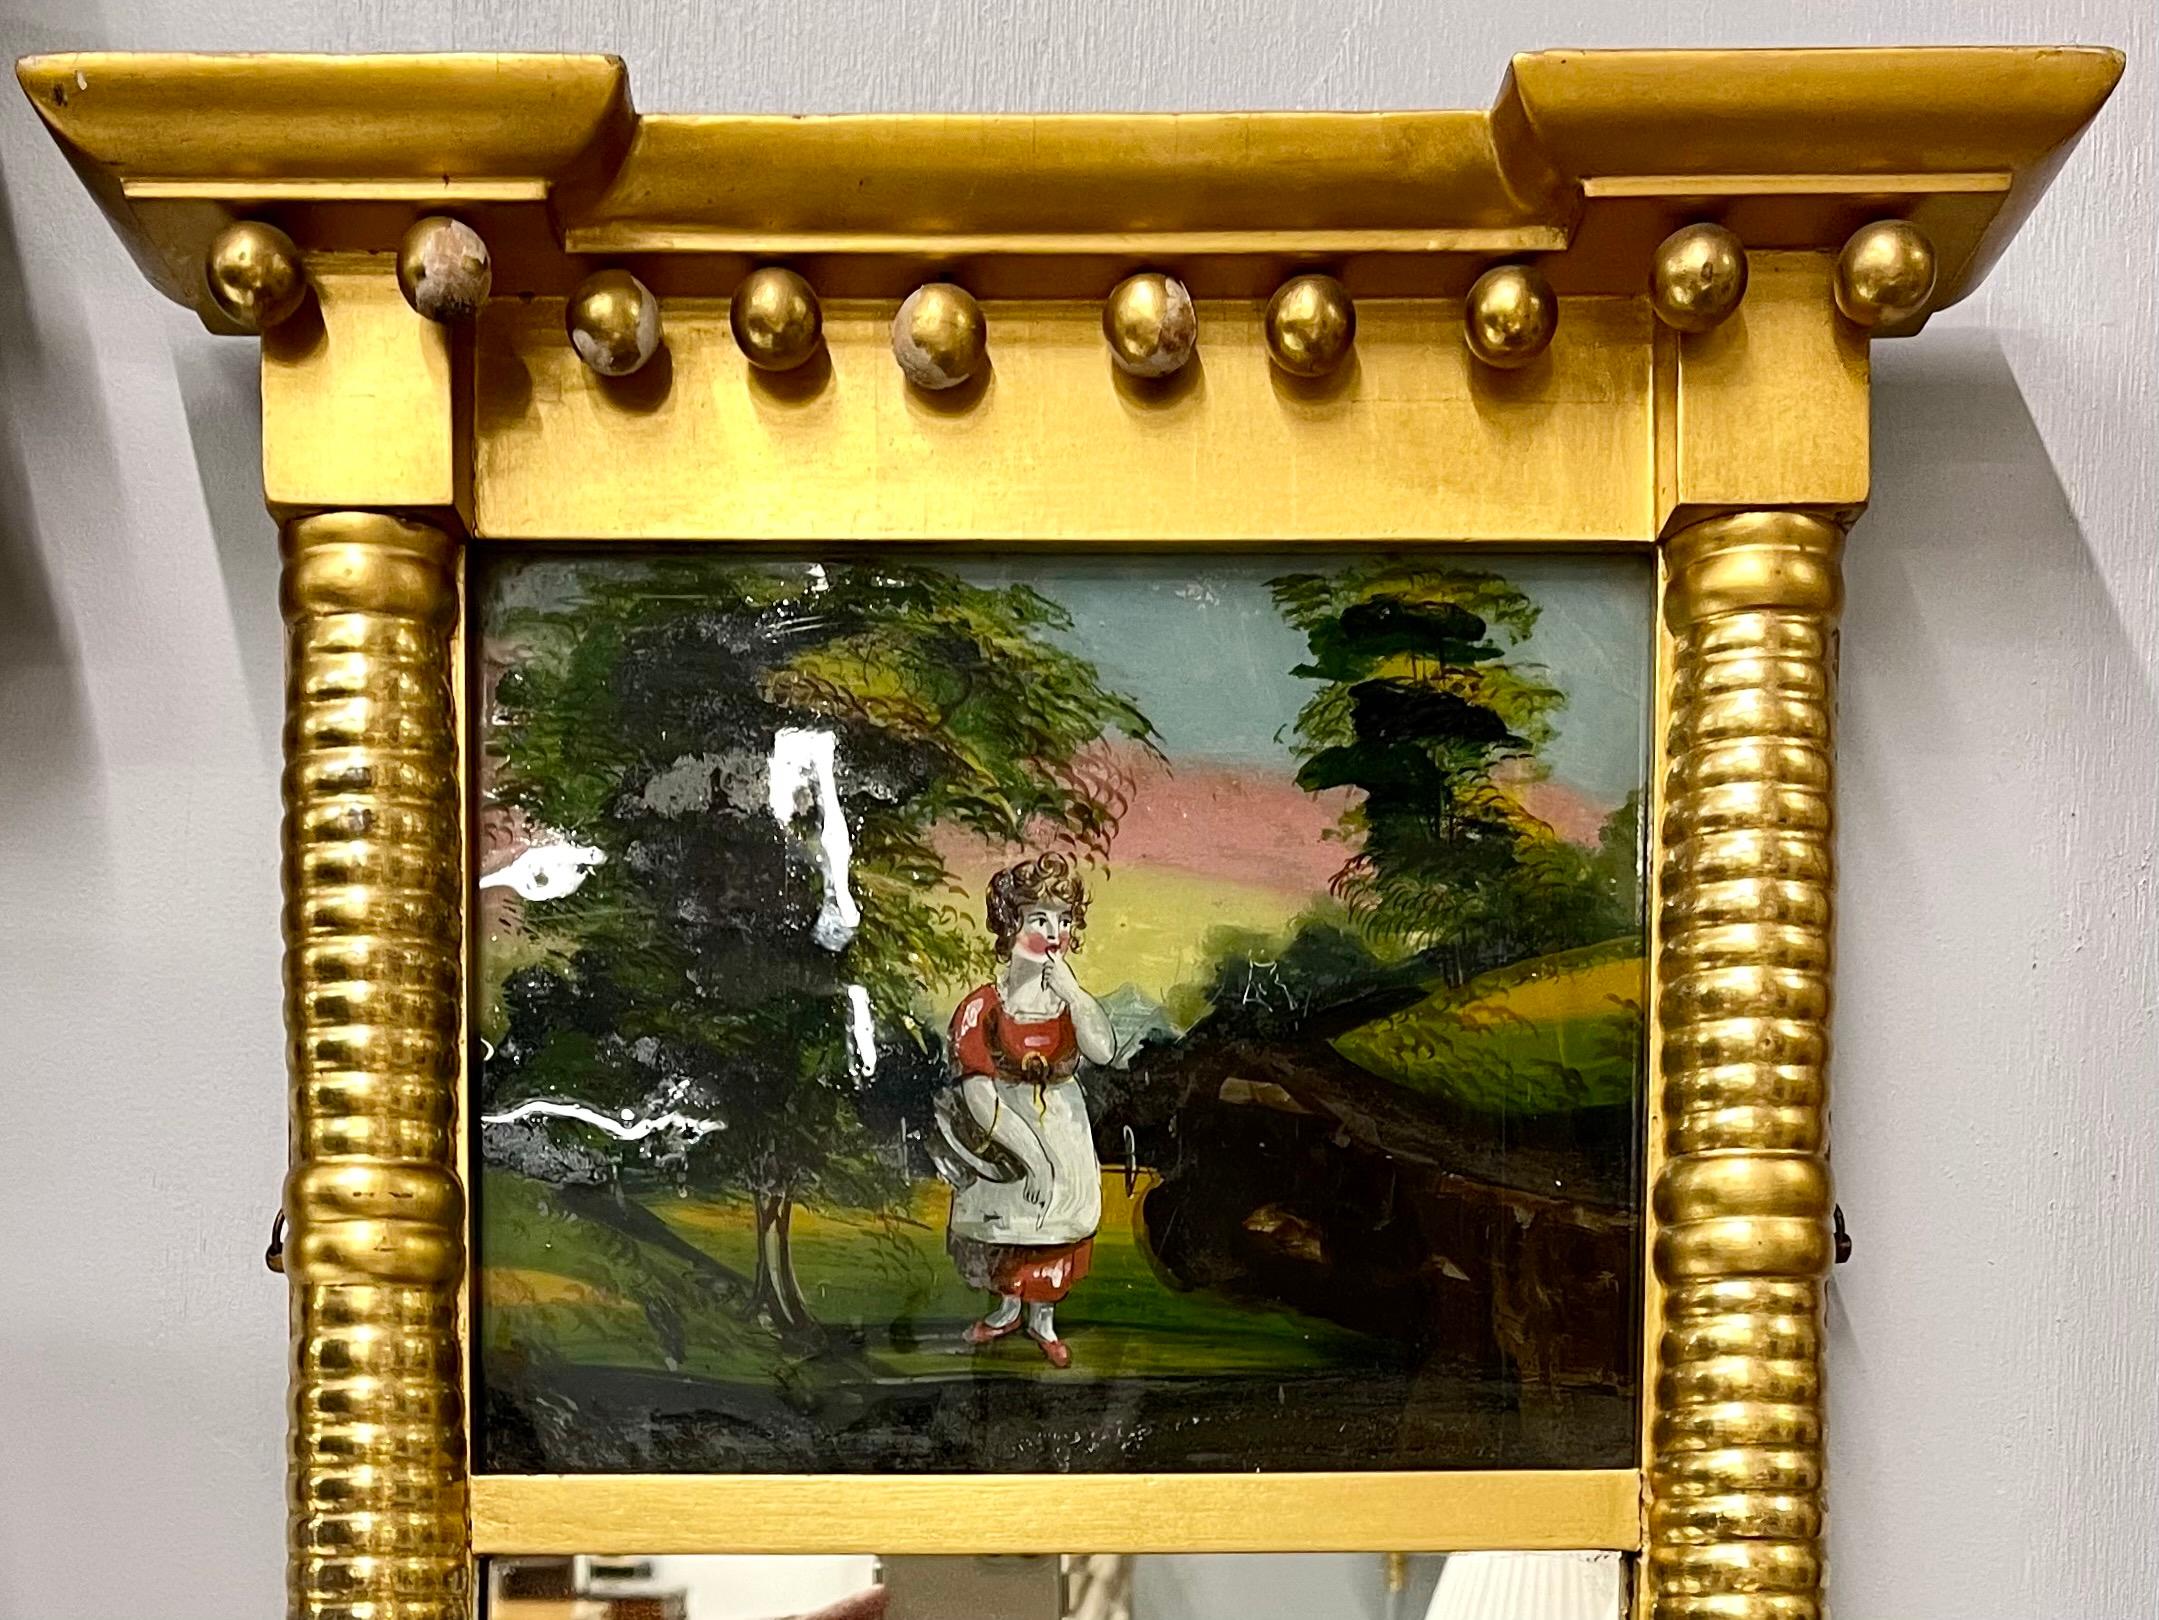 Un miroir mural ou de table finement détaillé, décoré d'un panneau d'églomisé en verre représentant une jeune fille dans une zone boisée, flanqué d'un cadre doré fin rappelant l'époque du fabricant. Can peut facilement être placé sur un support et